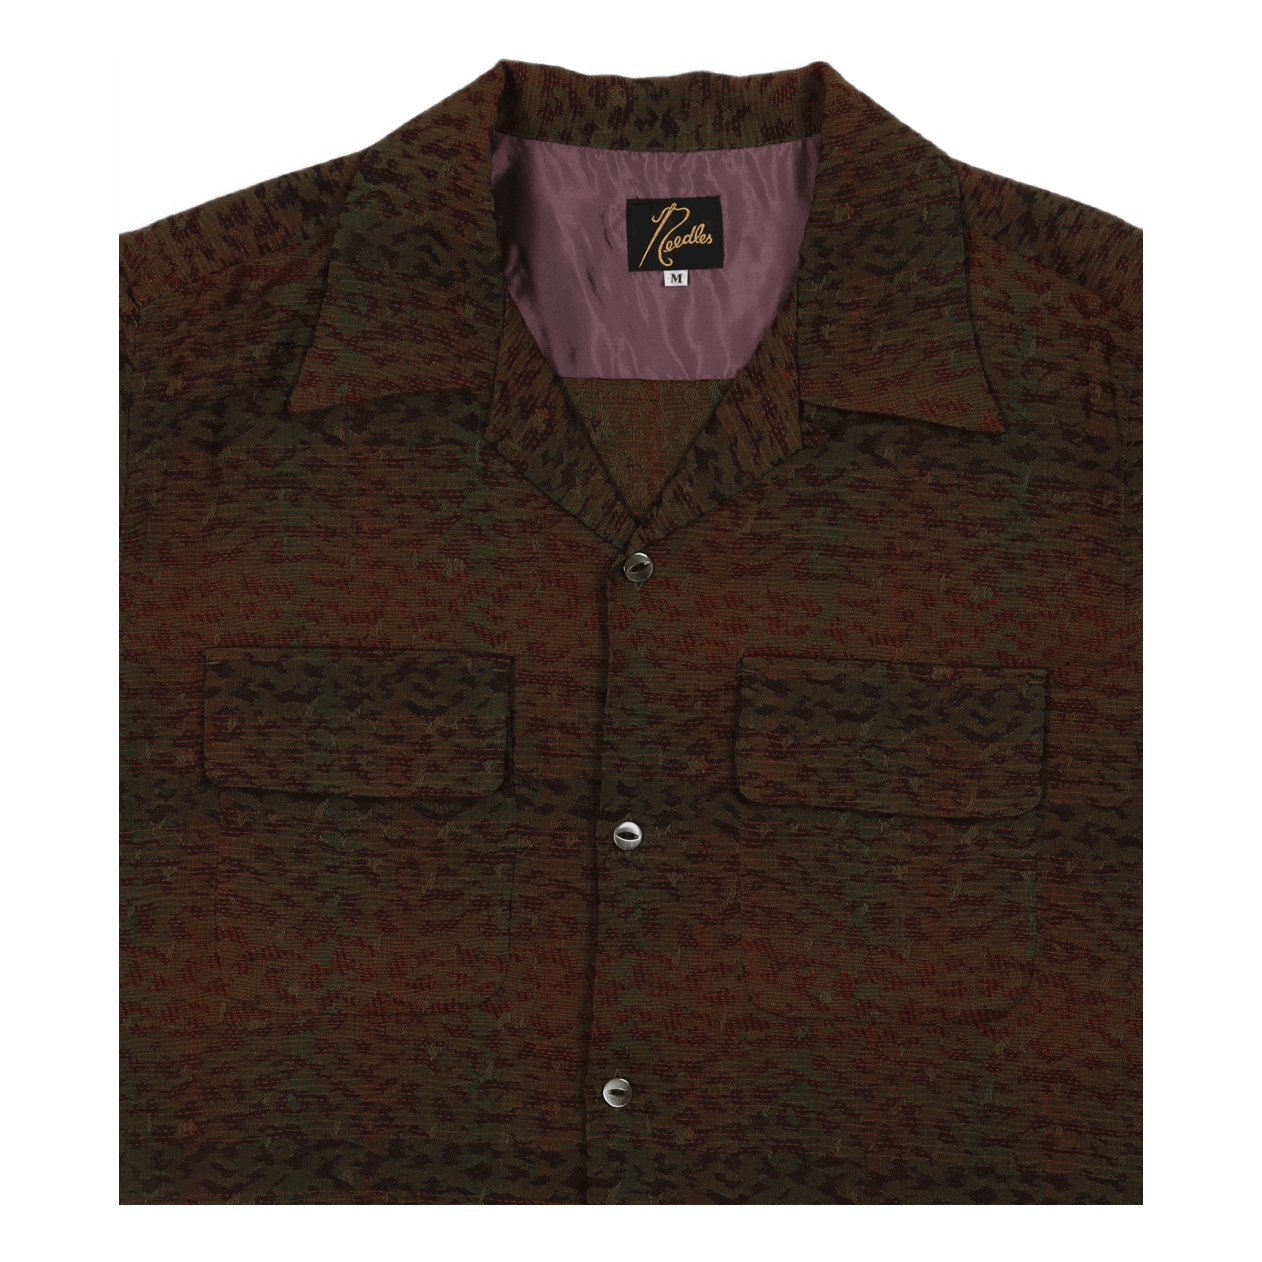 C.o.b. S/s Classic Shirt - R/w B-leopard B